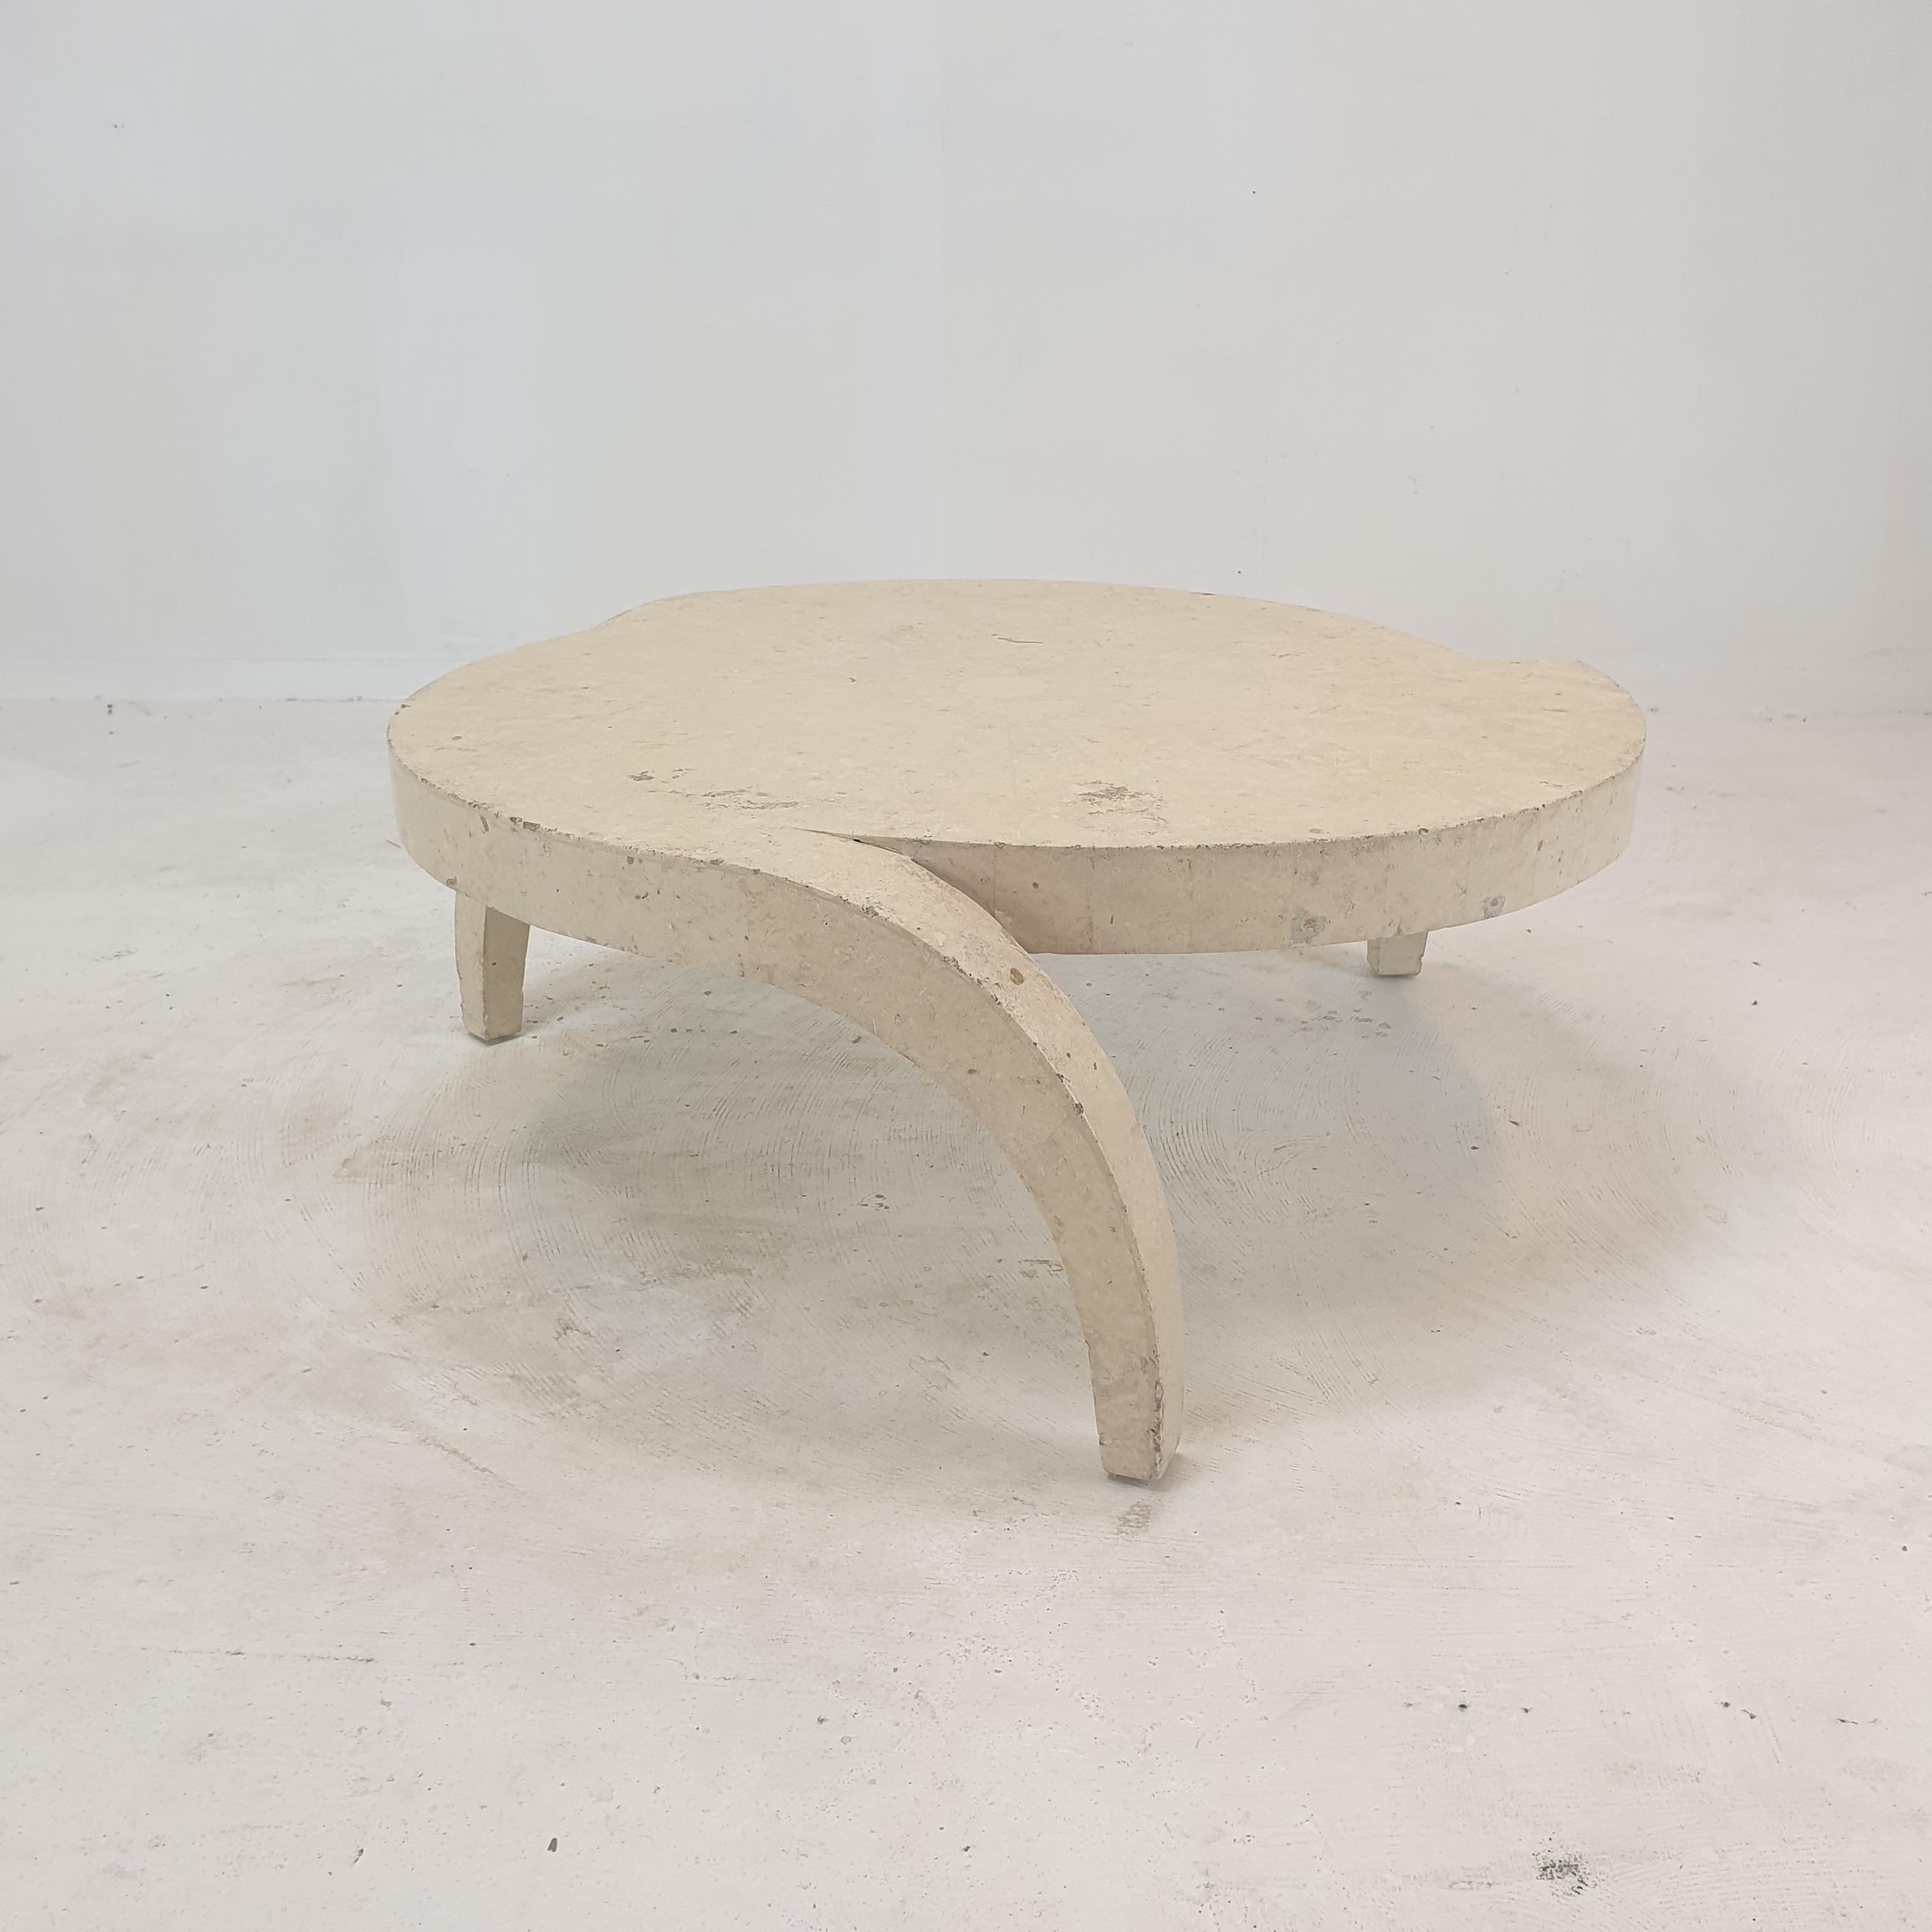 Sehr schöner und seltener Couchtisch oder Beistelltisch, 1980er Jahre.

Dieser atemberaubende Tisch ist aus dem grobkantigen Mactan-Stein oder Fossil-Stein mit Ziegelmotiv gefertigt.
Das Gewicht beträgt ca. 15 kg (55 lbs).

Wir arbeiten mit